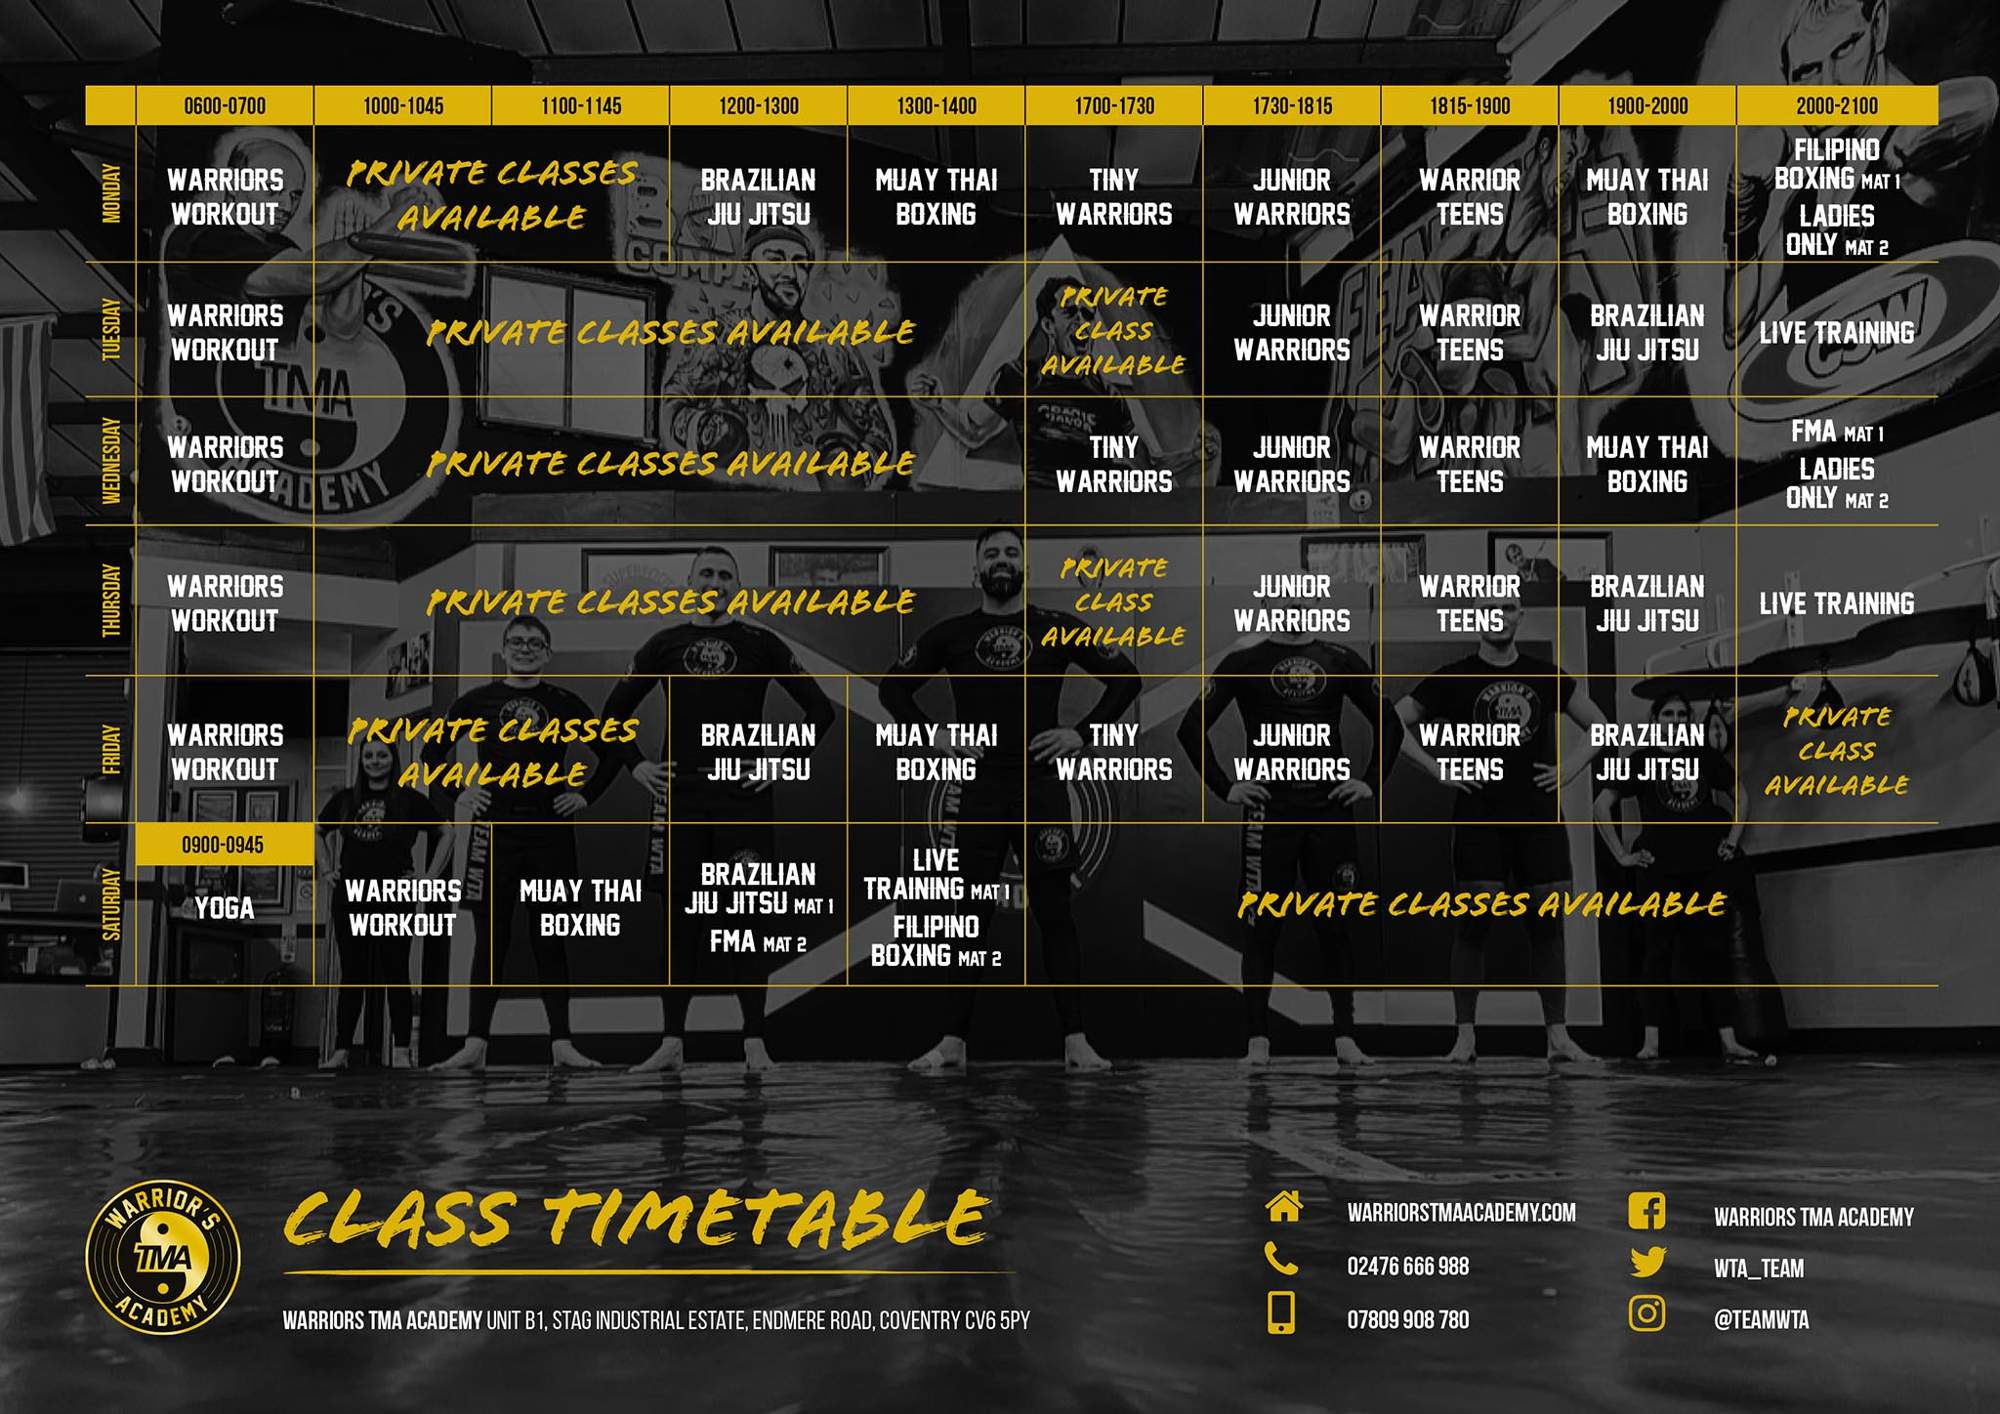 Warriors TMA Academy Time Table